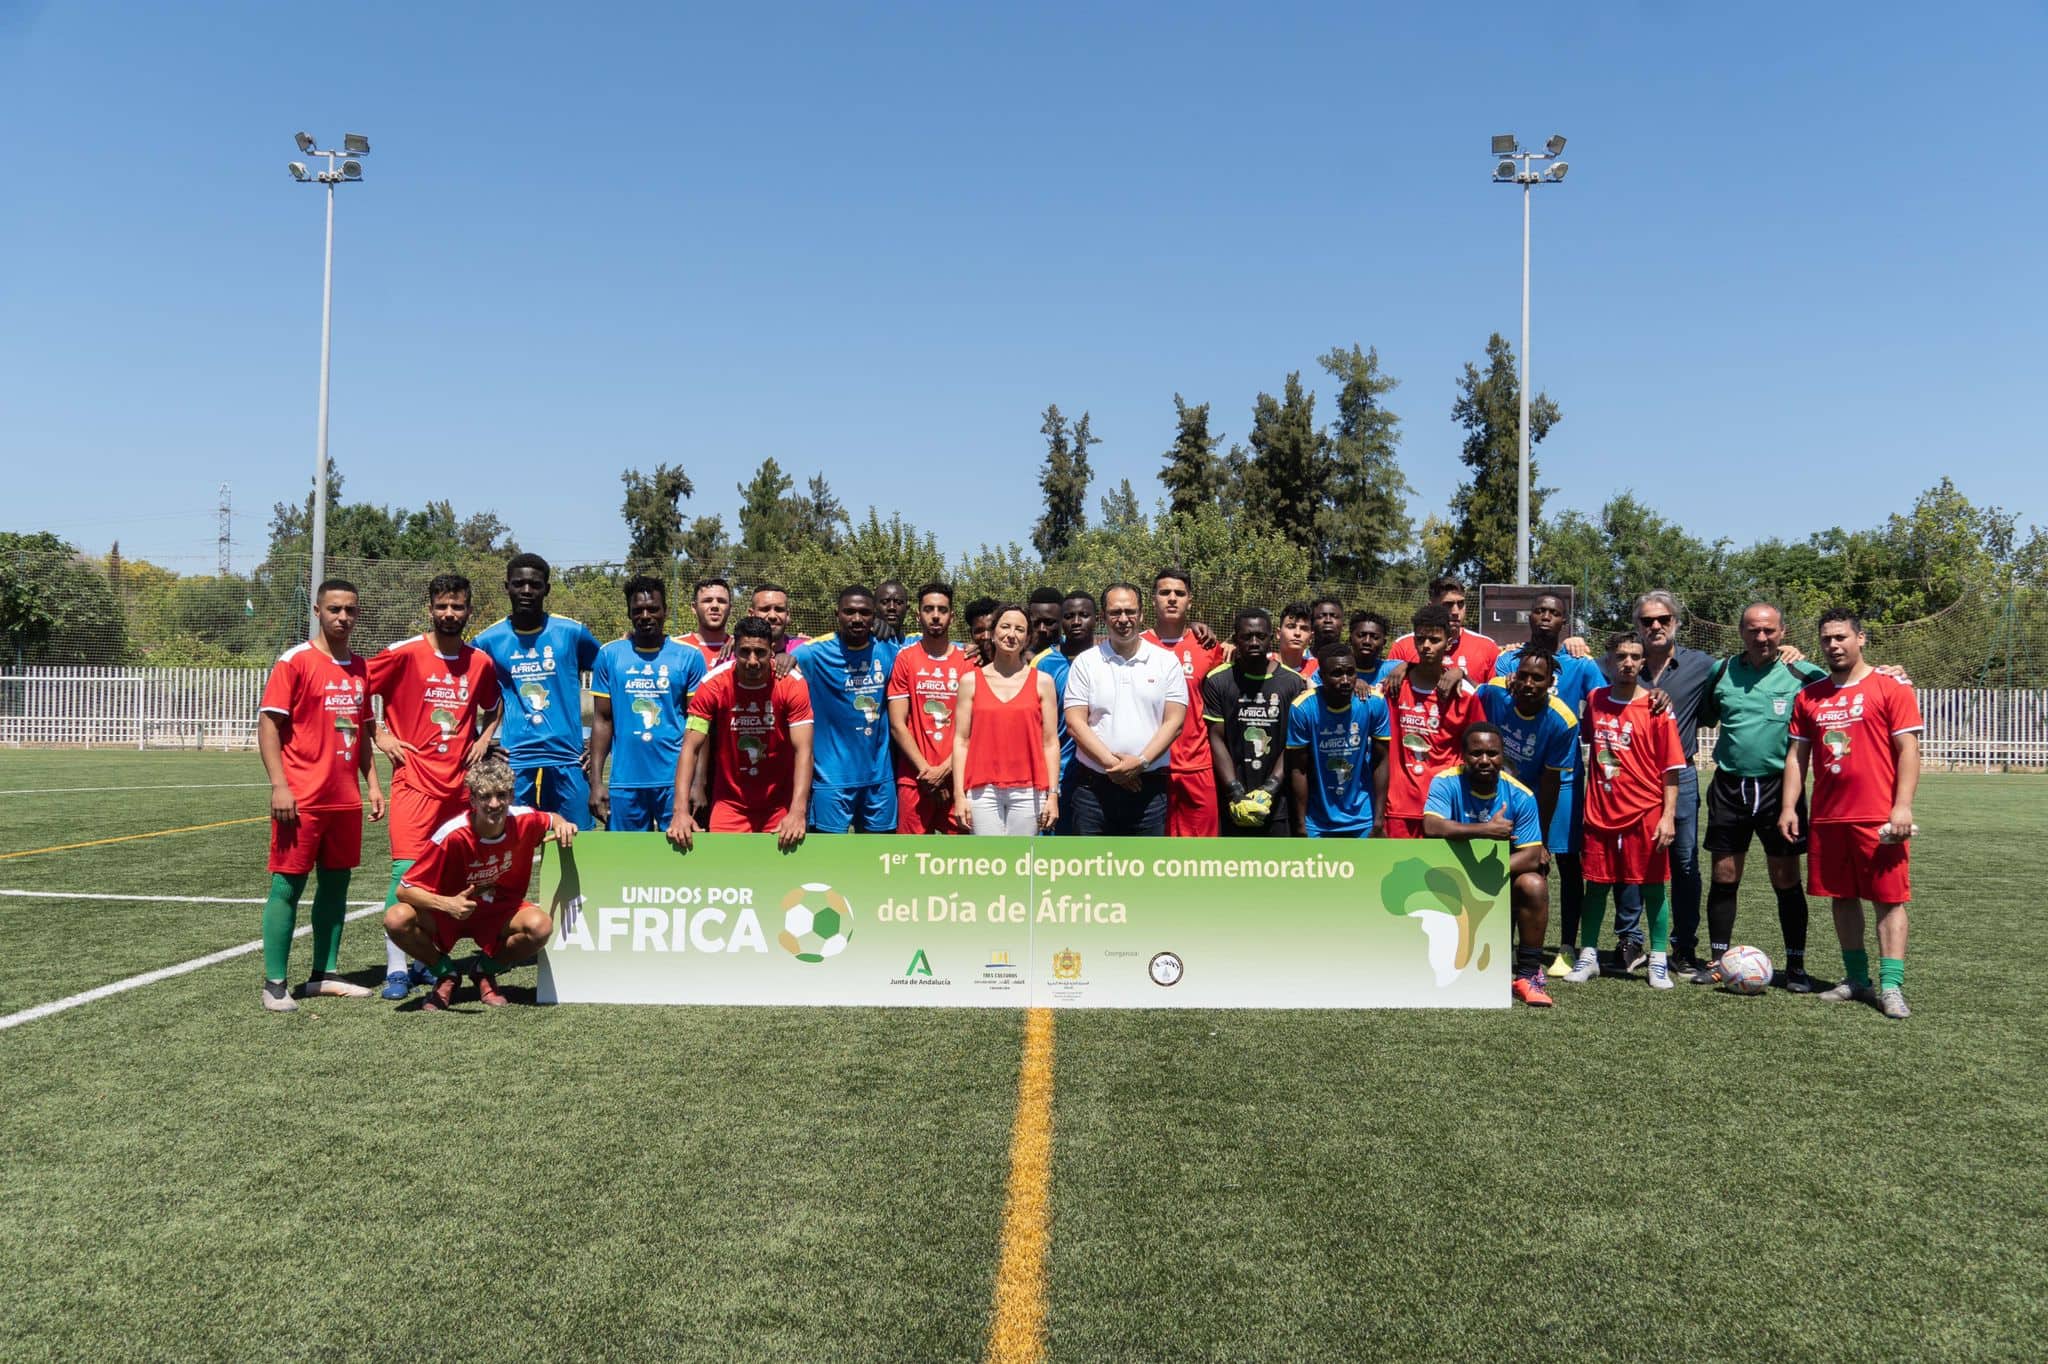 صور.. القنصلية العامة للمملكة باشبيلية تنظم دوري لكرة القدم بمناسبة اليوم العالمي لإفريقيا 